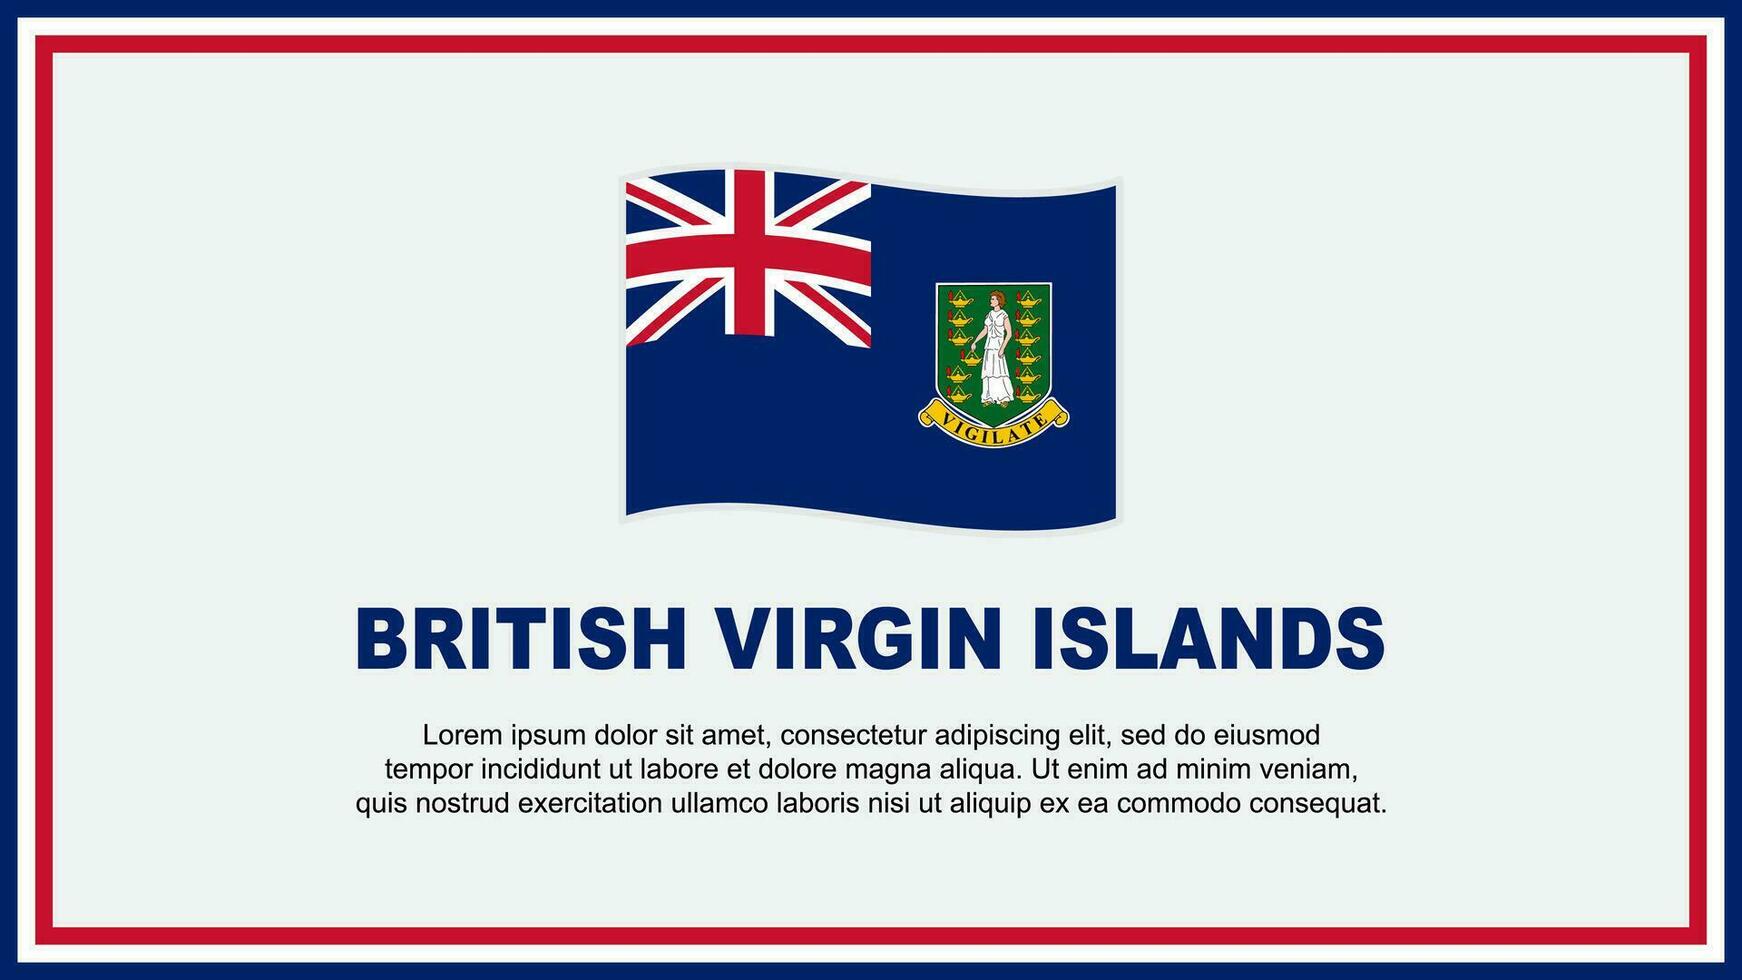 británico Virgen islas bandera resumen antecedentes diseño modelo. británico Virgen islas independencia día bandera social medios de comunicación vector ilustración. bandera